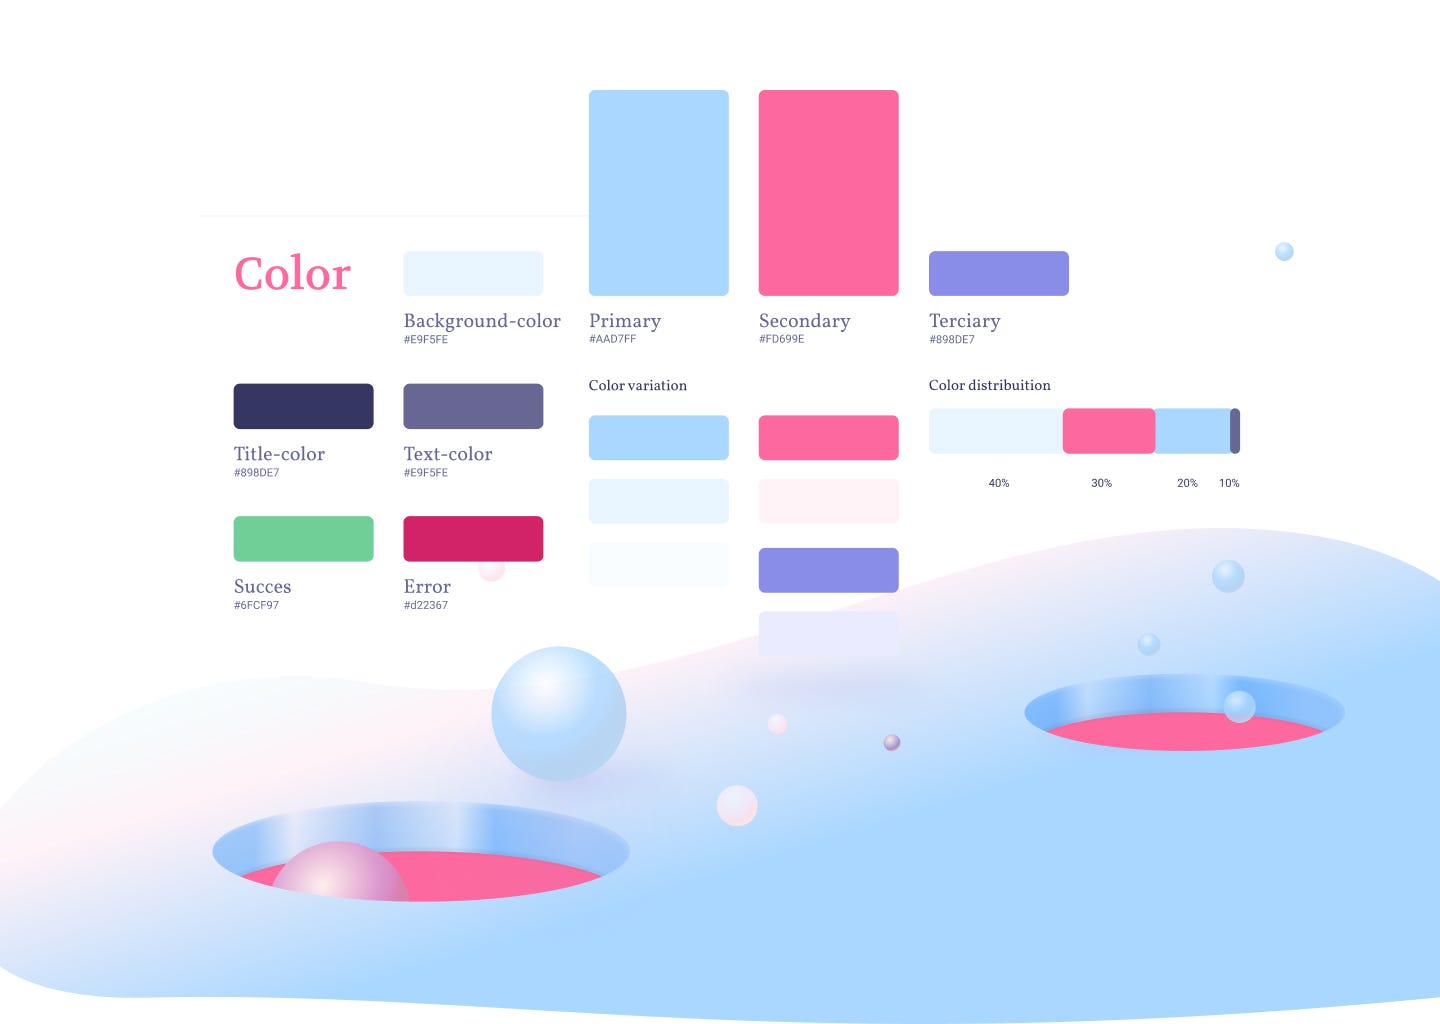 Design Shots: Os 7 contrastes de cor - Infoportugal - Sistemas de